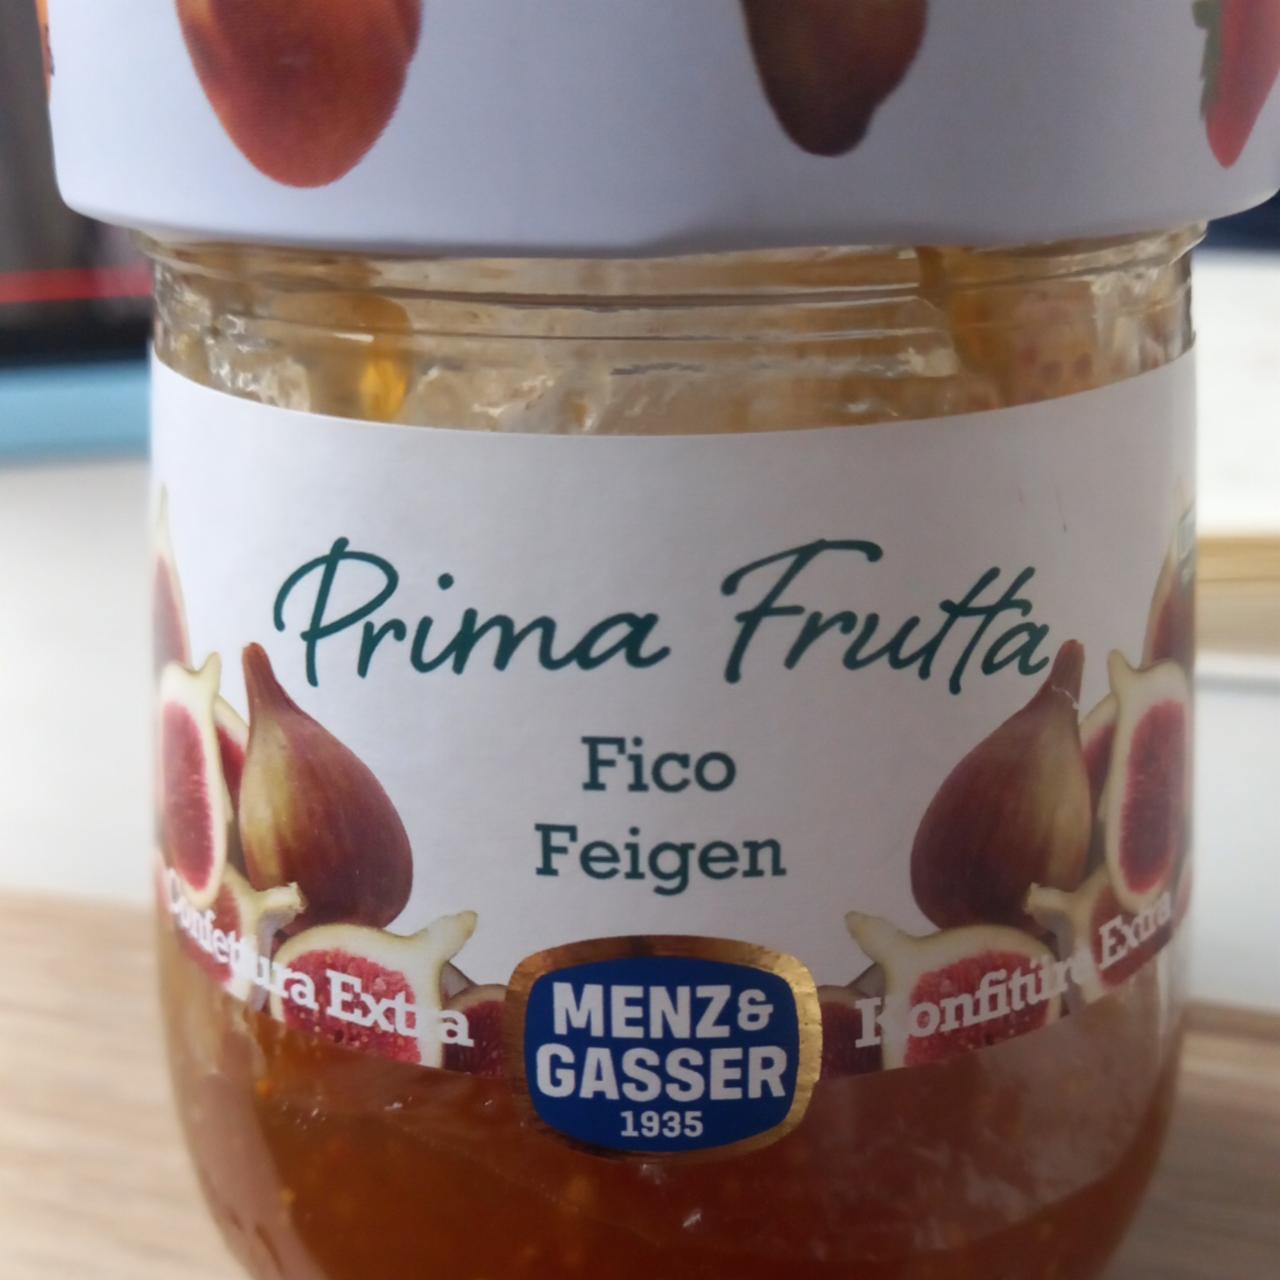 Фото - инжирный джем Prima Frutta